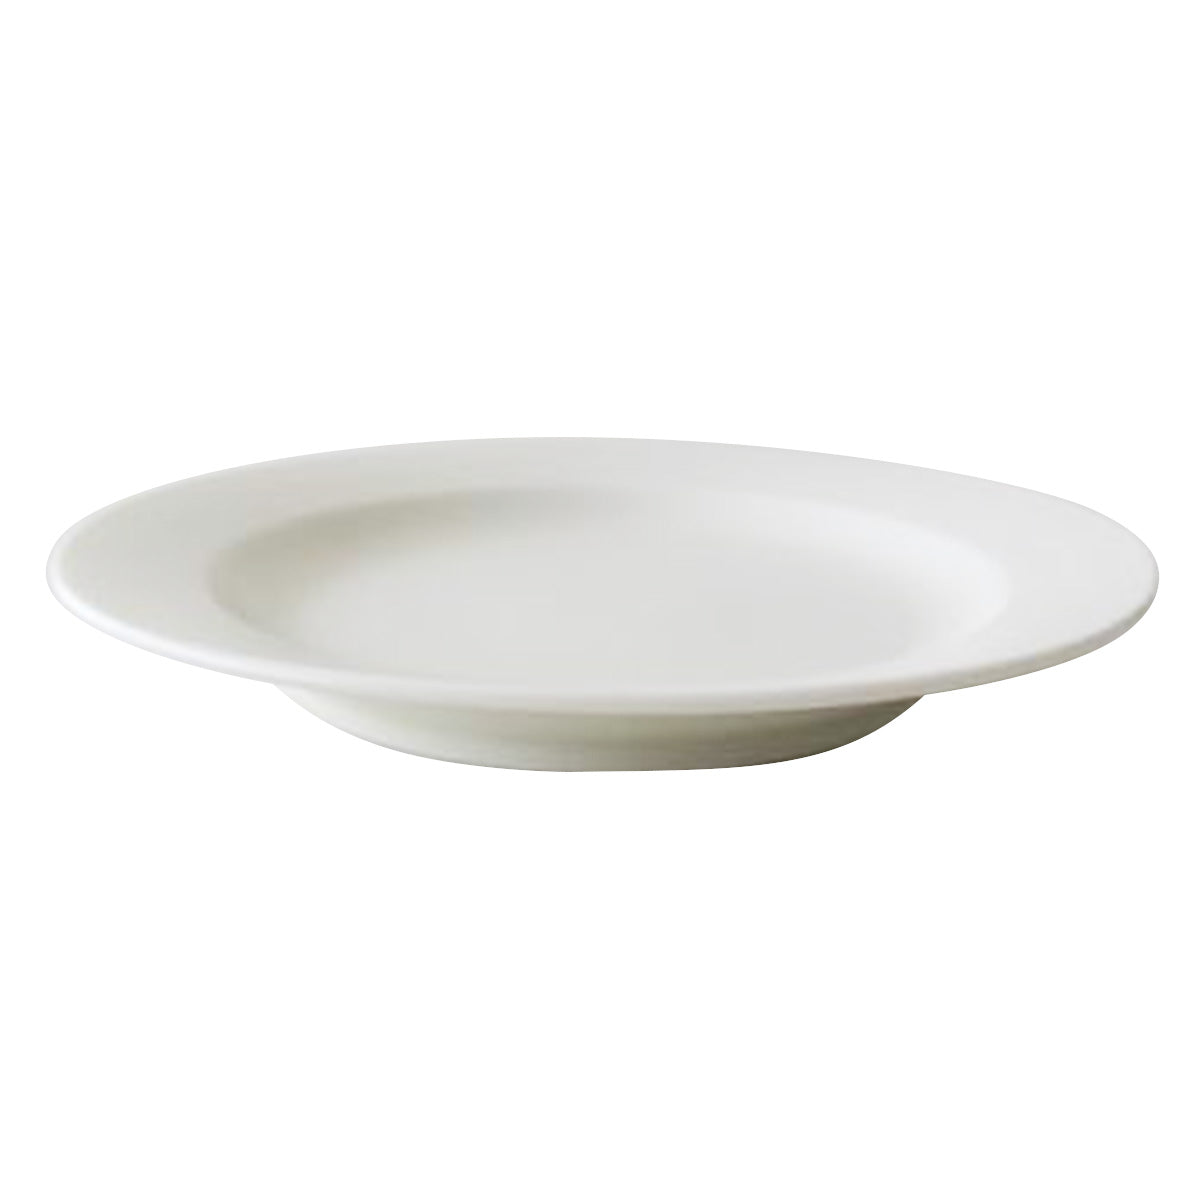 深皿 スープ皿 プレート Tokinone PB. リムプレート6.0皿 アイボリー 19.5cm 049220